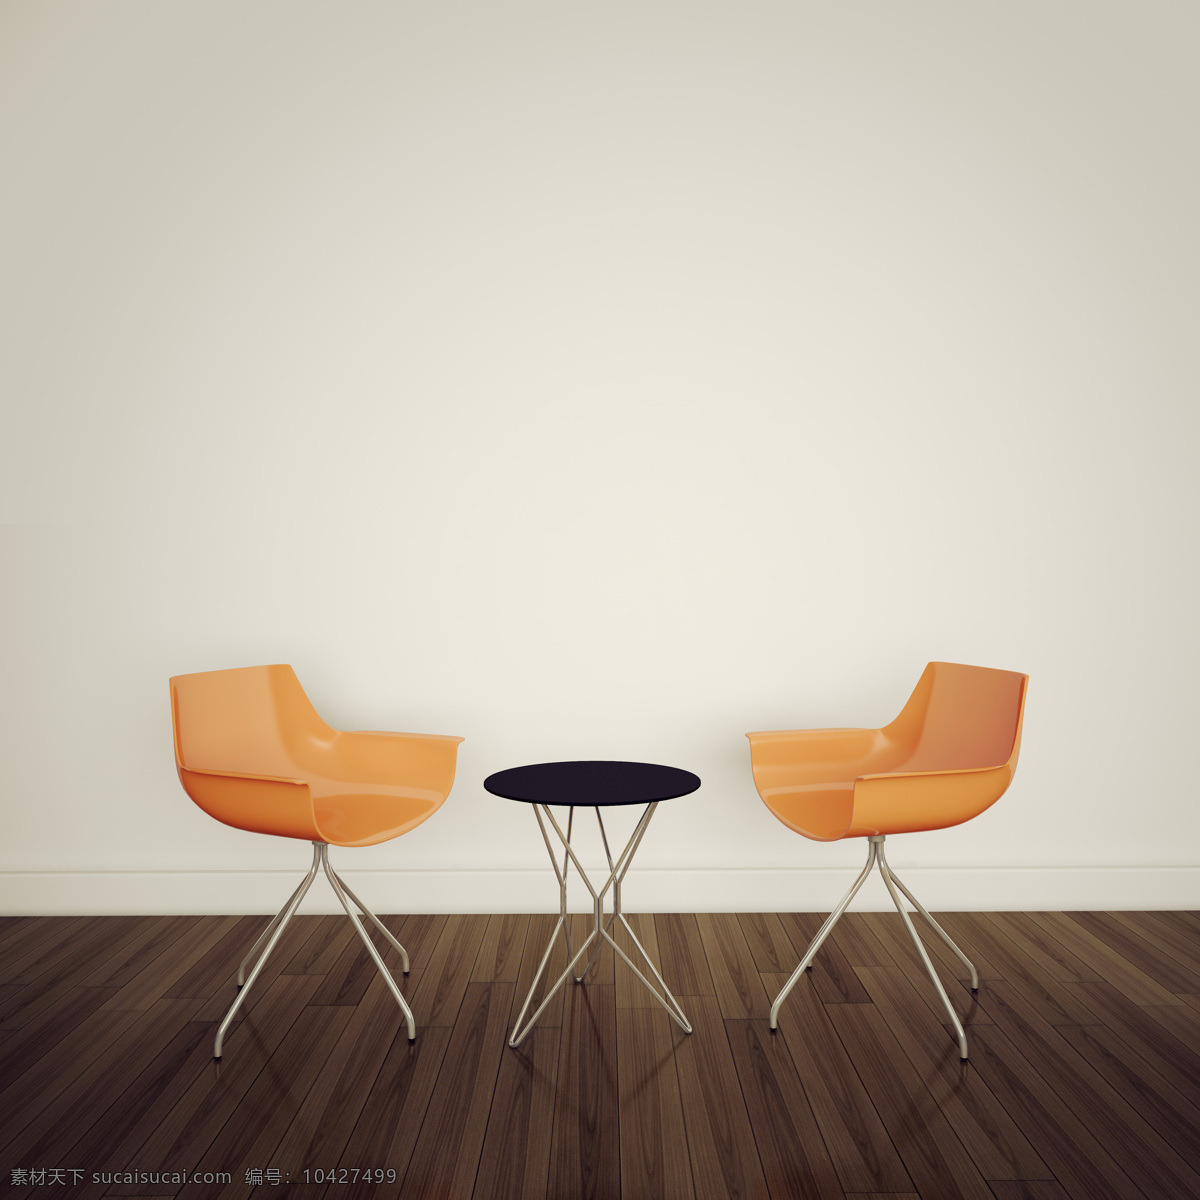 极 简 主义 椅子 茶几 极简主义 时尚简约 简洁风格 简约摄影 简约图片 其他类别 生活百科